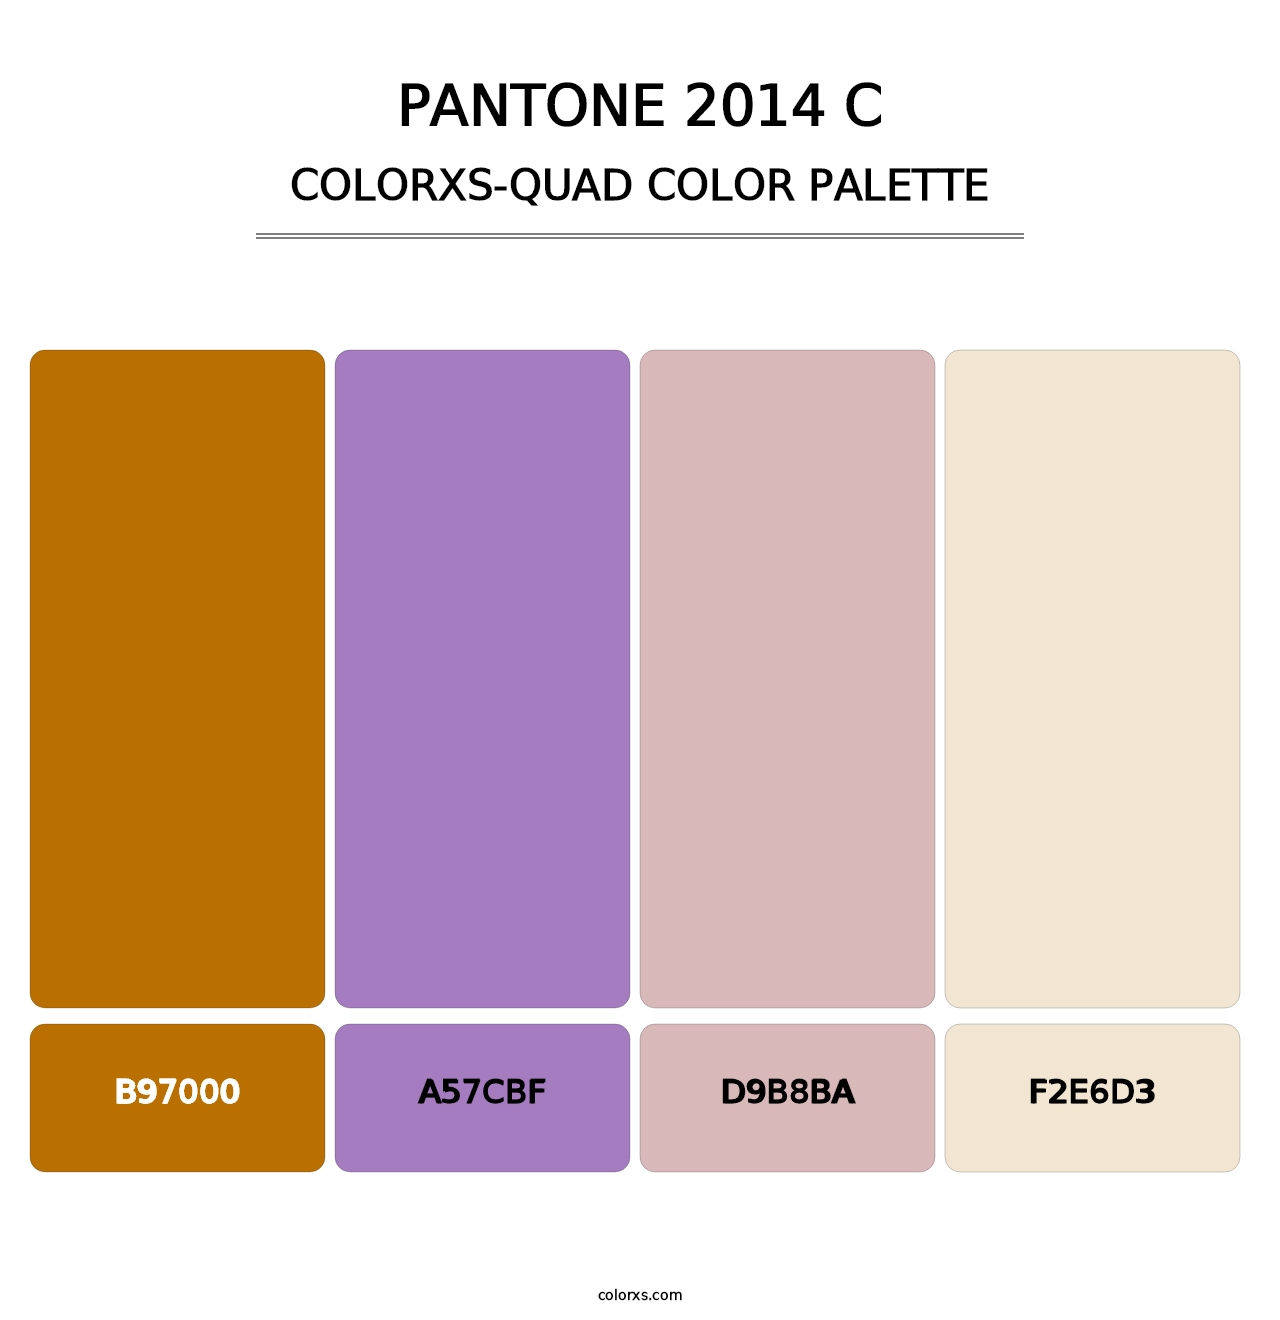 PANTONE 2014 C - Colorxs Quad Palette